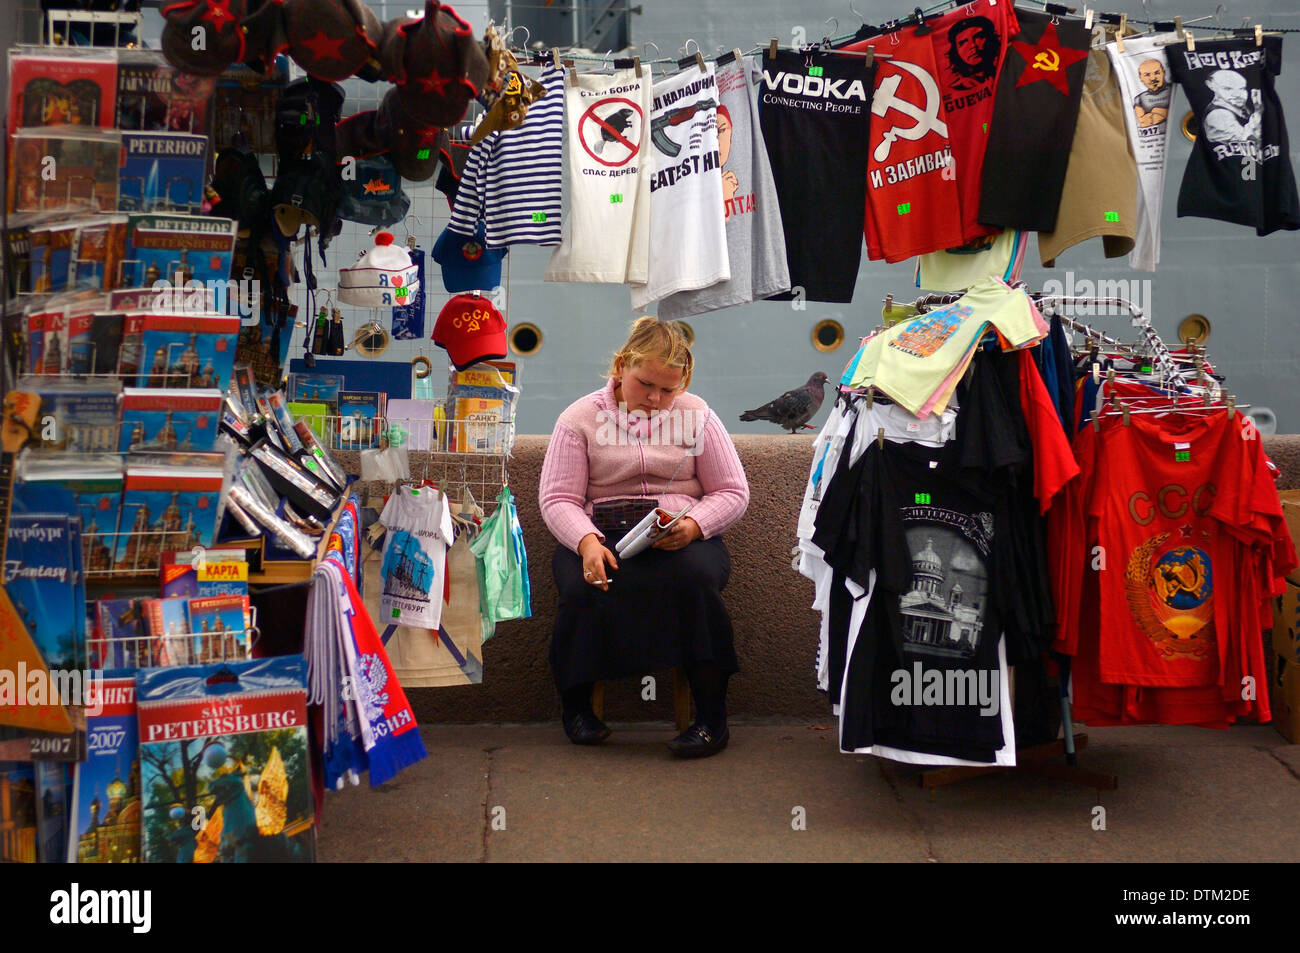 Gelangweilt auf der Suche Geschenk Shop Street Hersteller, Rauchen und lesen ein Buch. in St. Petersburg, Russland Stockfoto